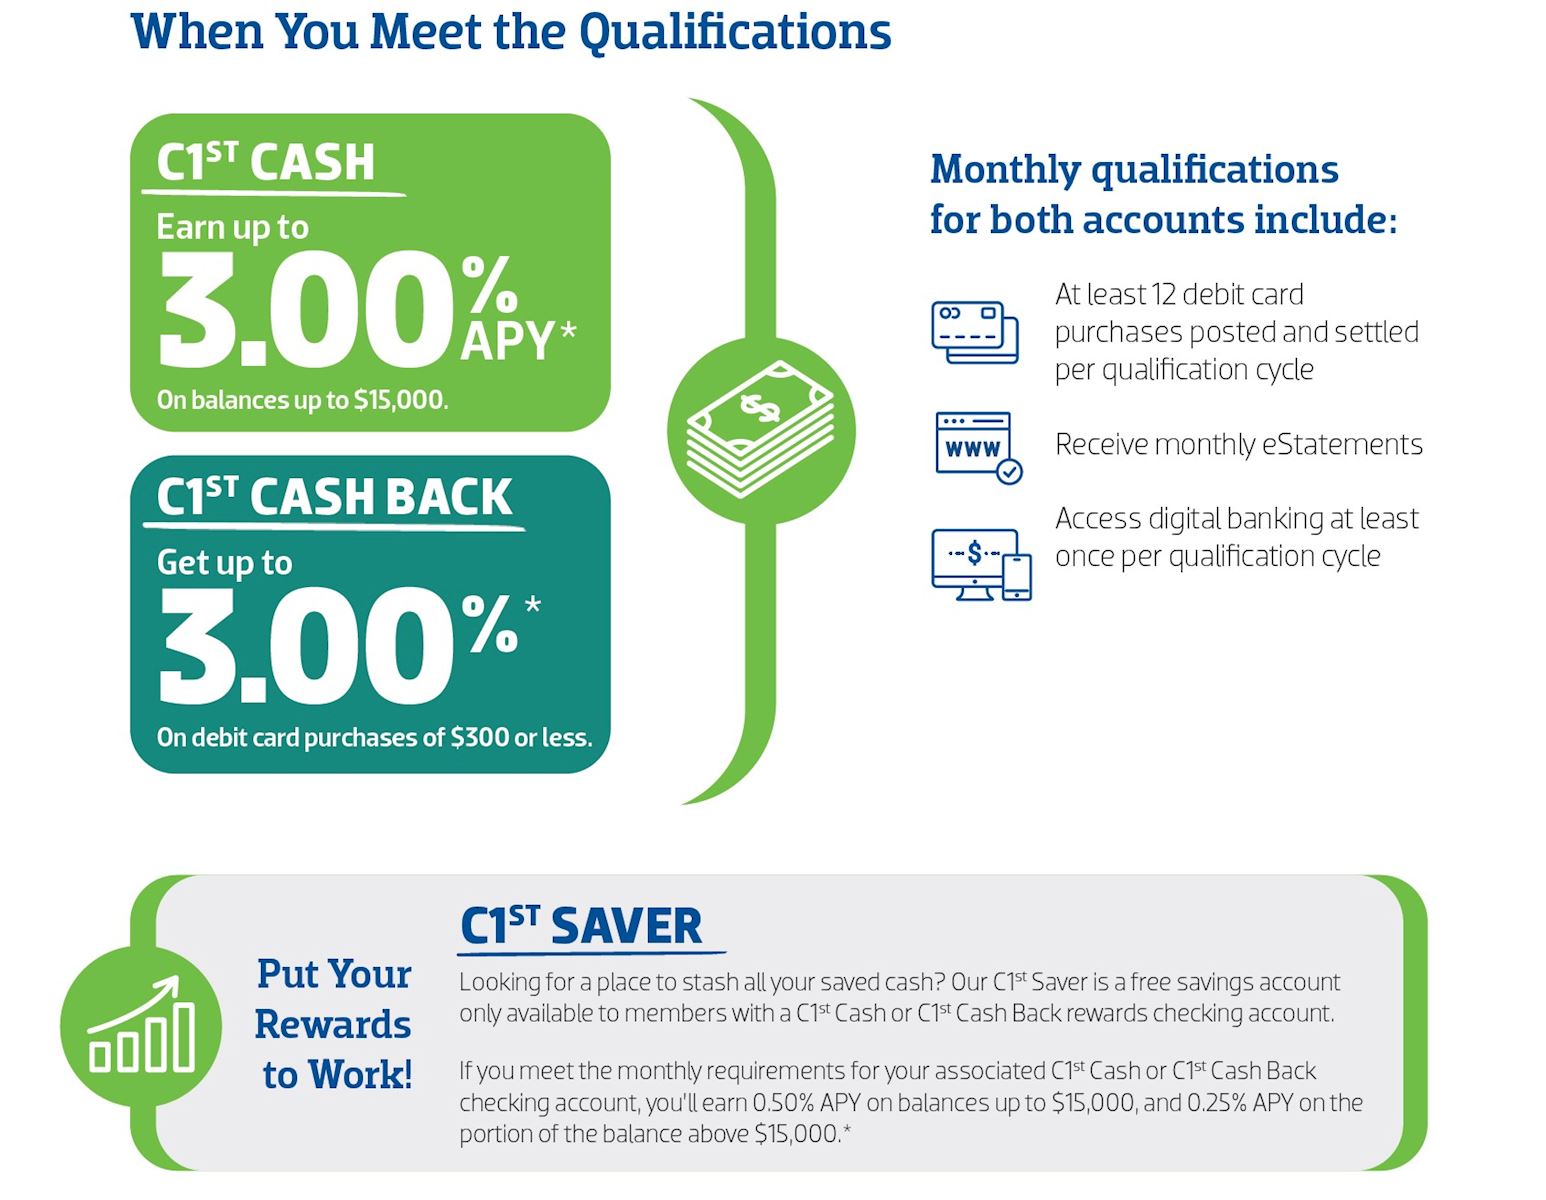 Qualifications - C1st Cash and C1st Cash Back